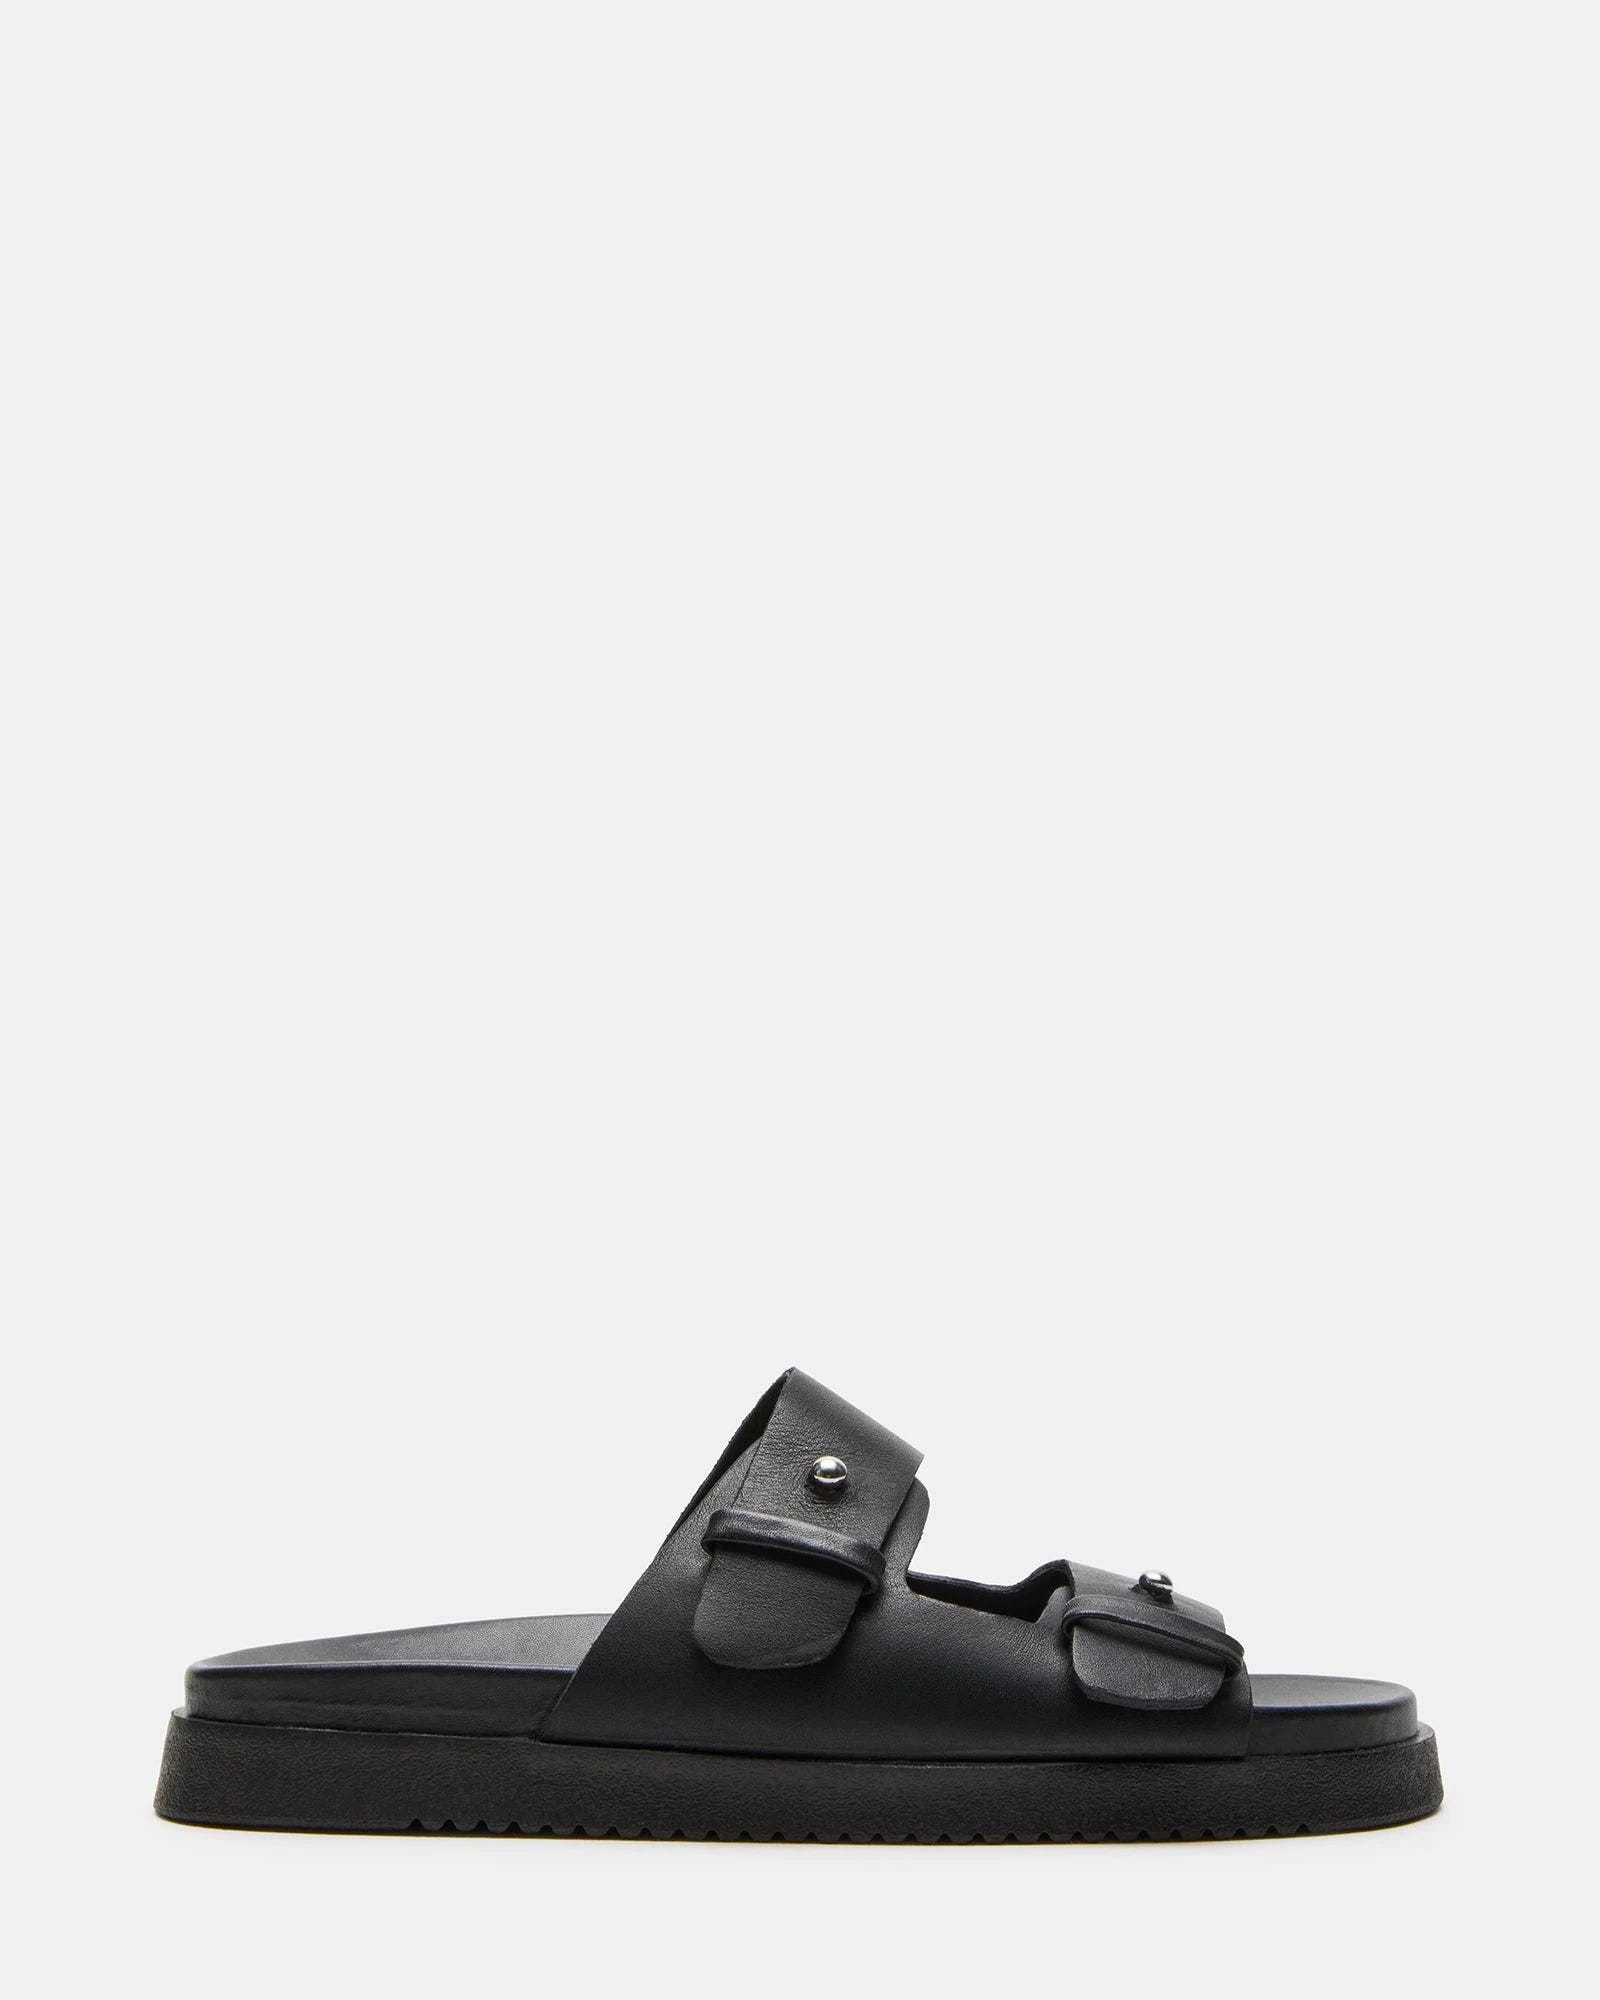 Comfortable Steve Madden All Black Slide Sandal | Image